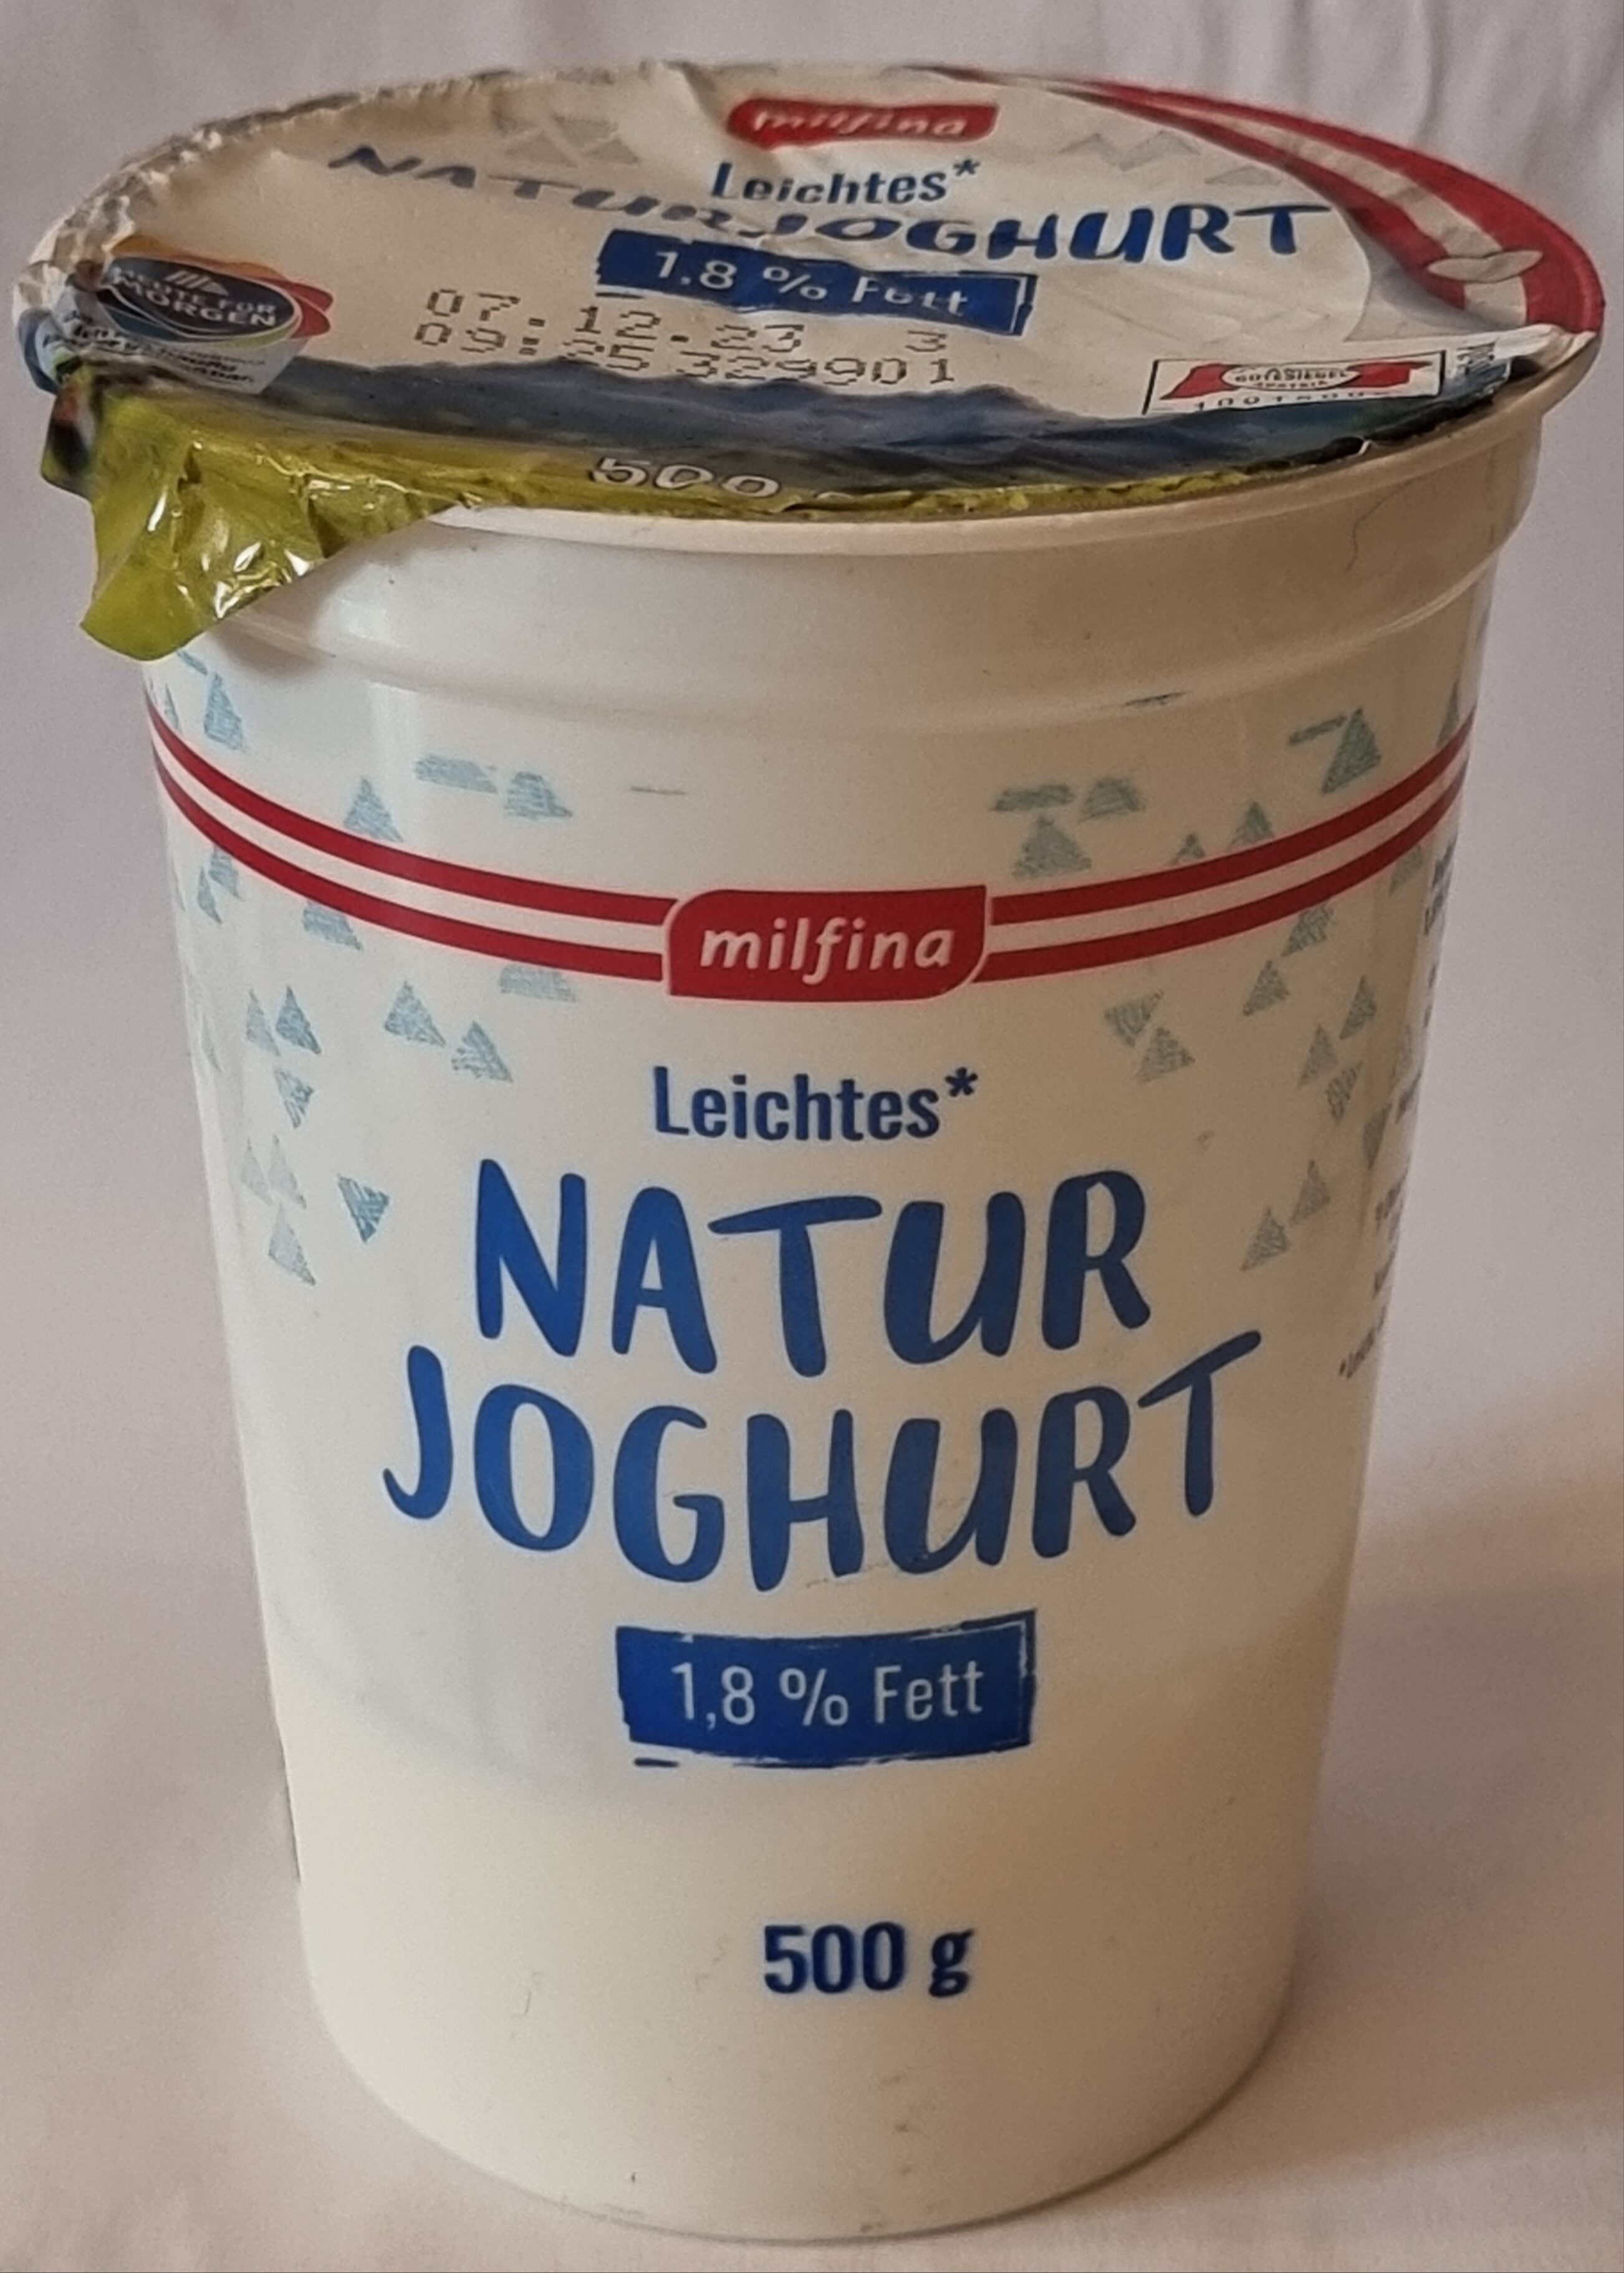 Leichtes Naturjoghurt 1,8% Fett - Produkt